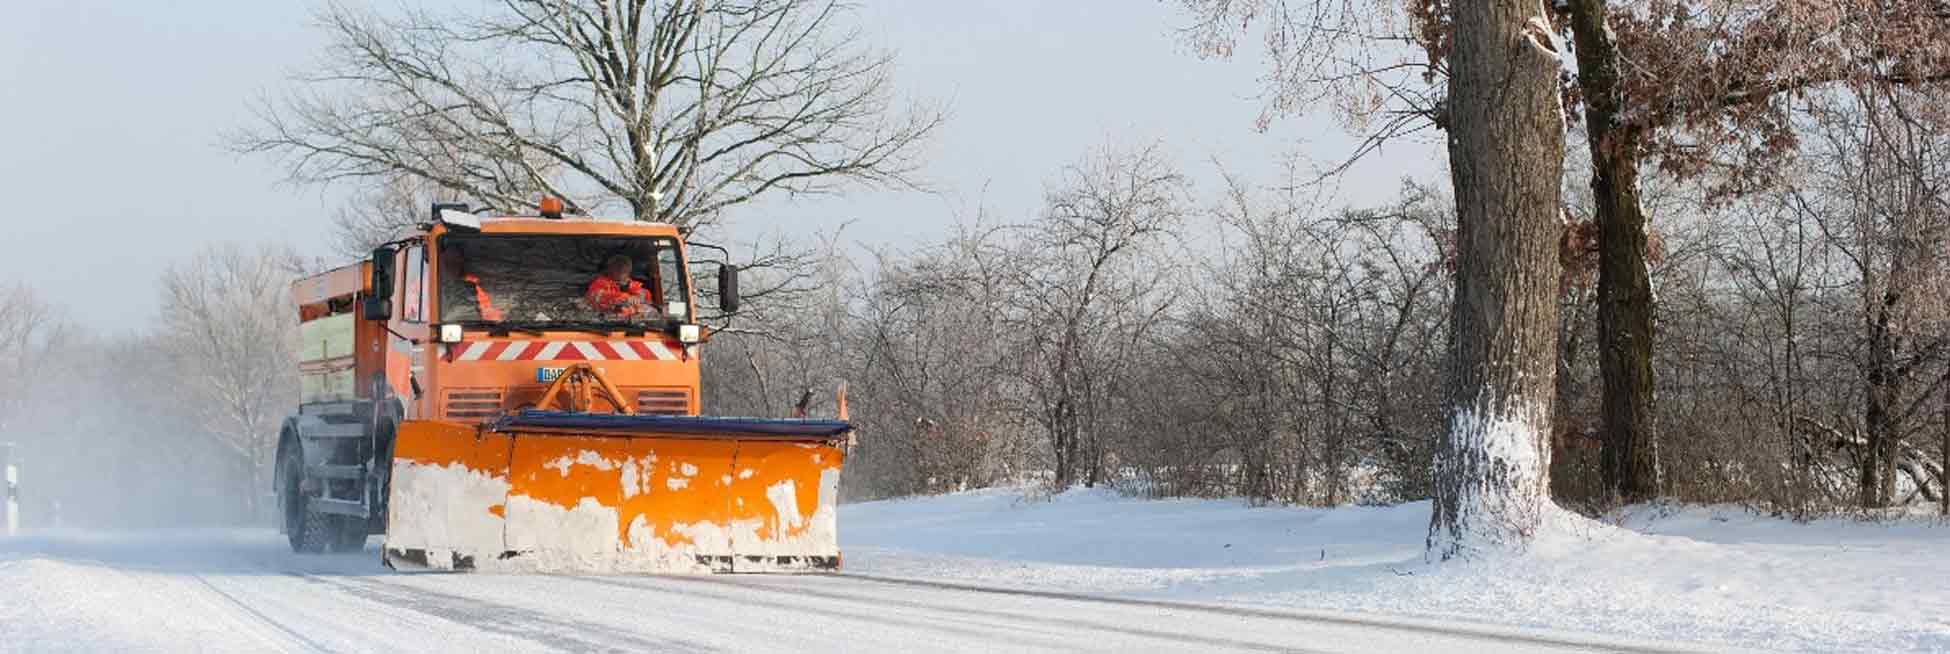 Winterdienst Fahrzeug bei der Arbeit in Essen